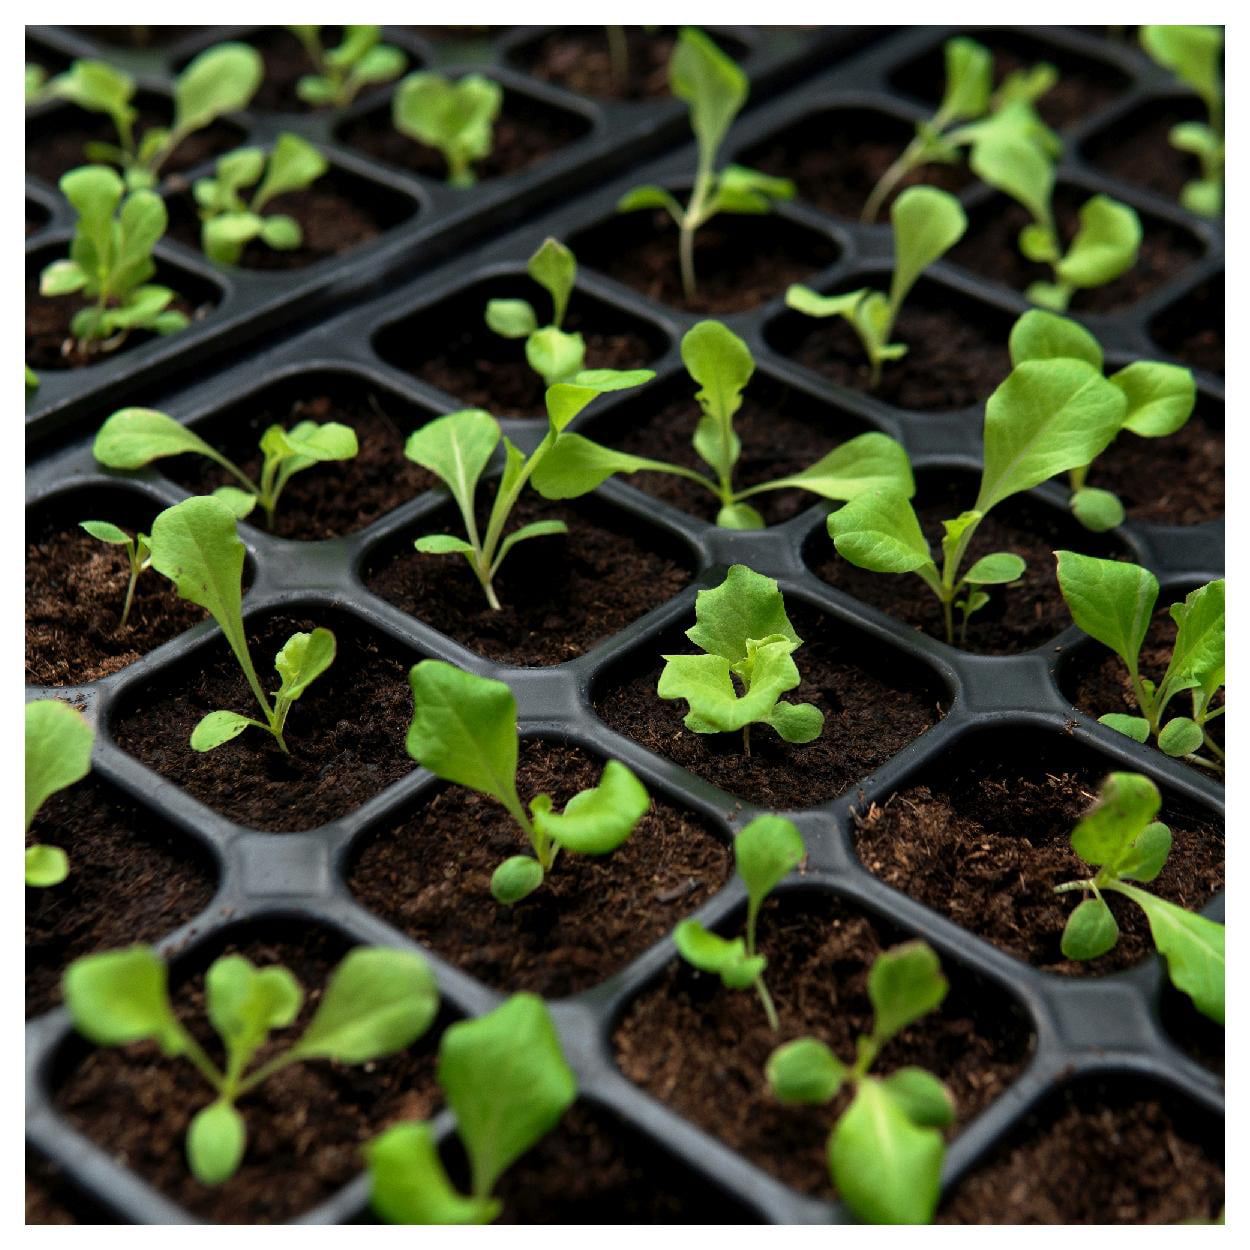 Everwilde Farms - 1 oz Salad Bowl Leaf Lettuce Seeds - Gold Vault Bulk Seed Packet